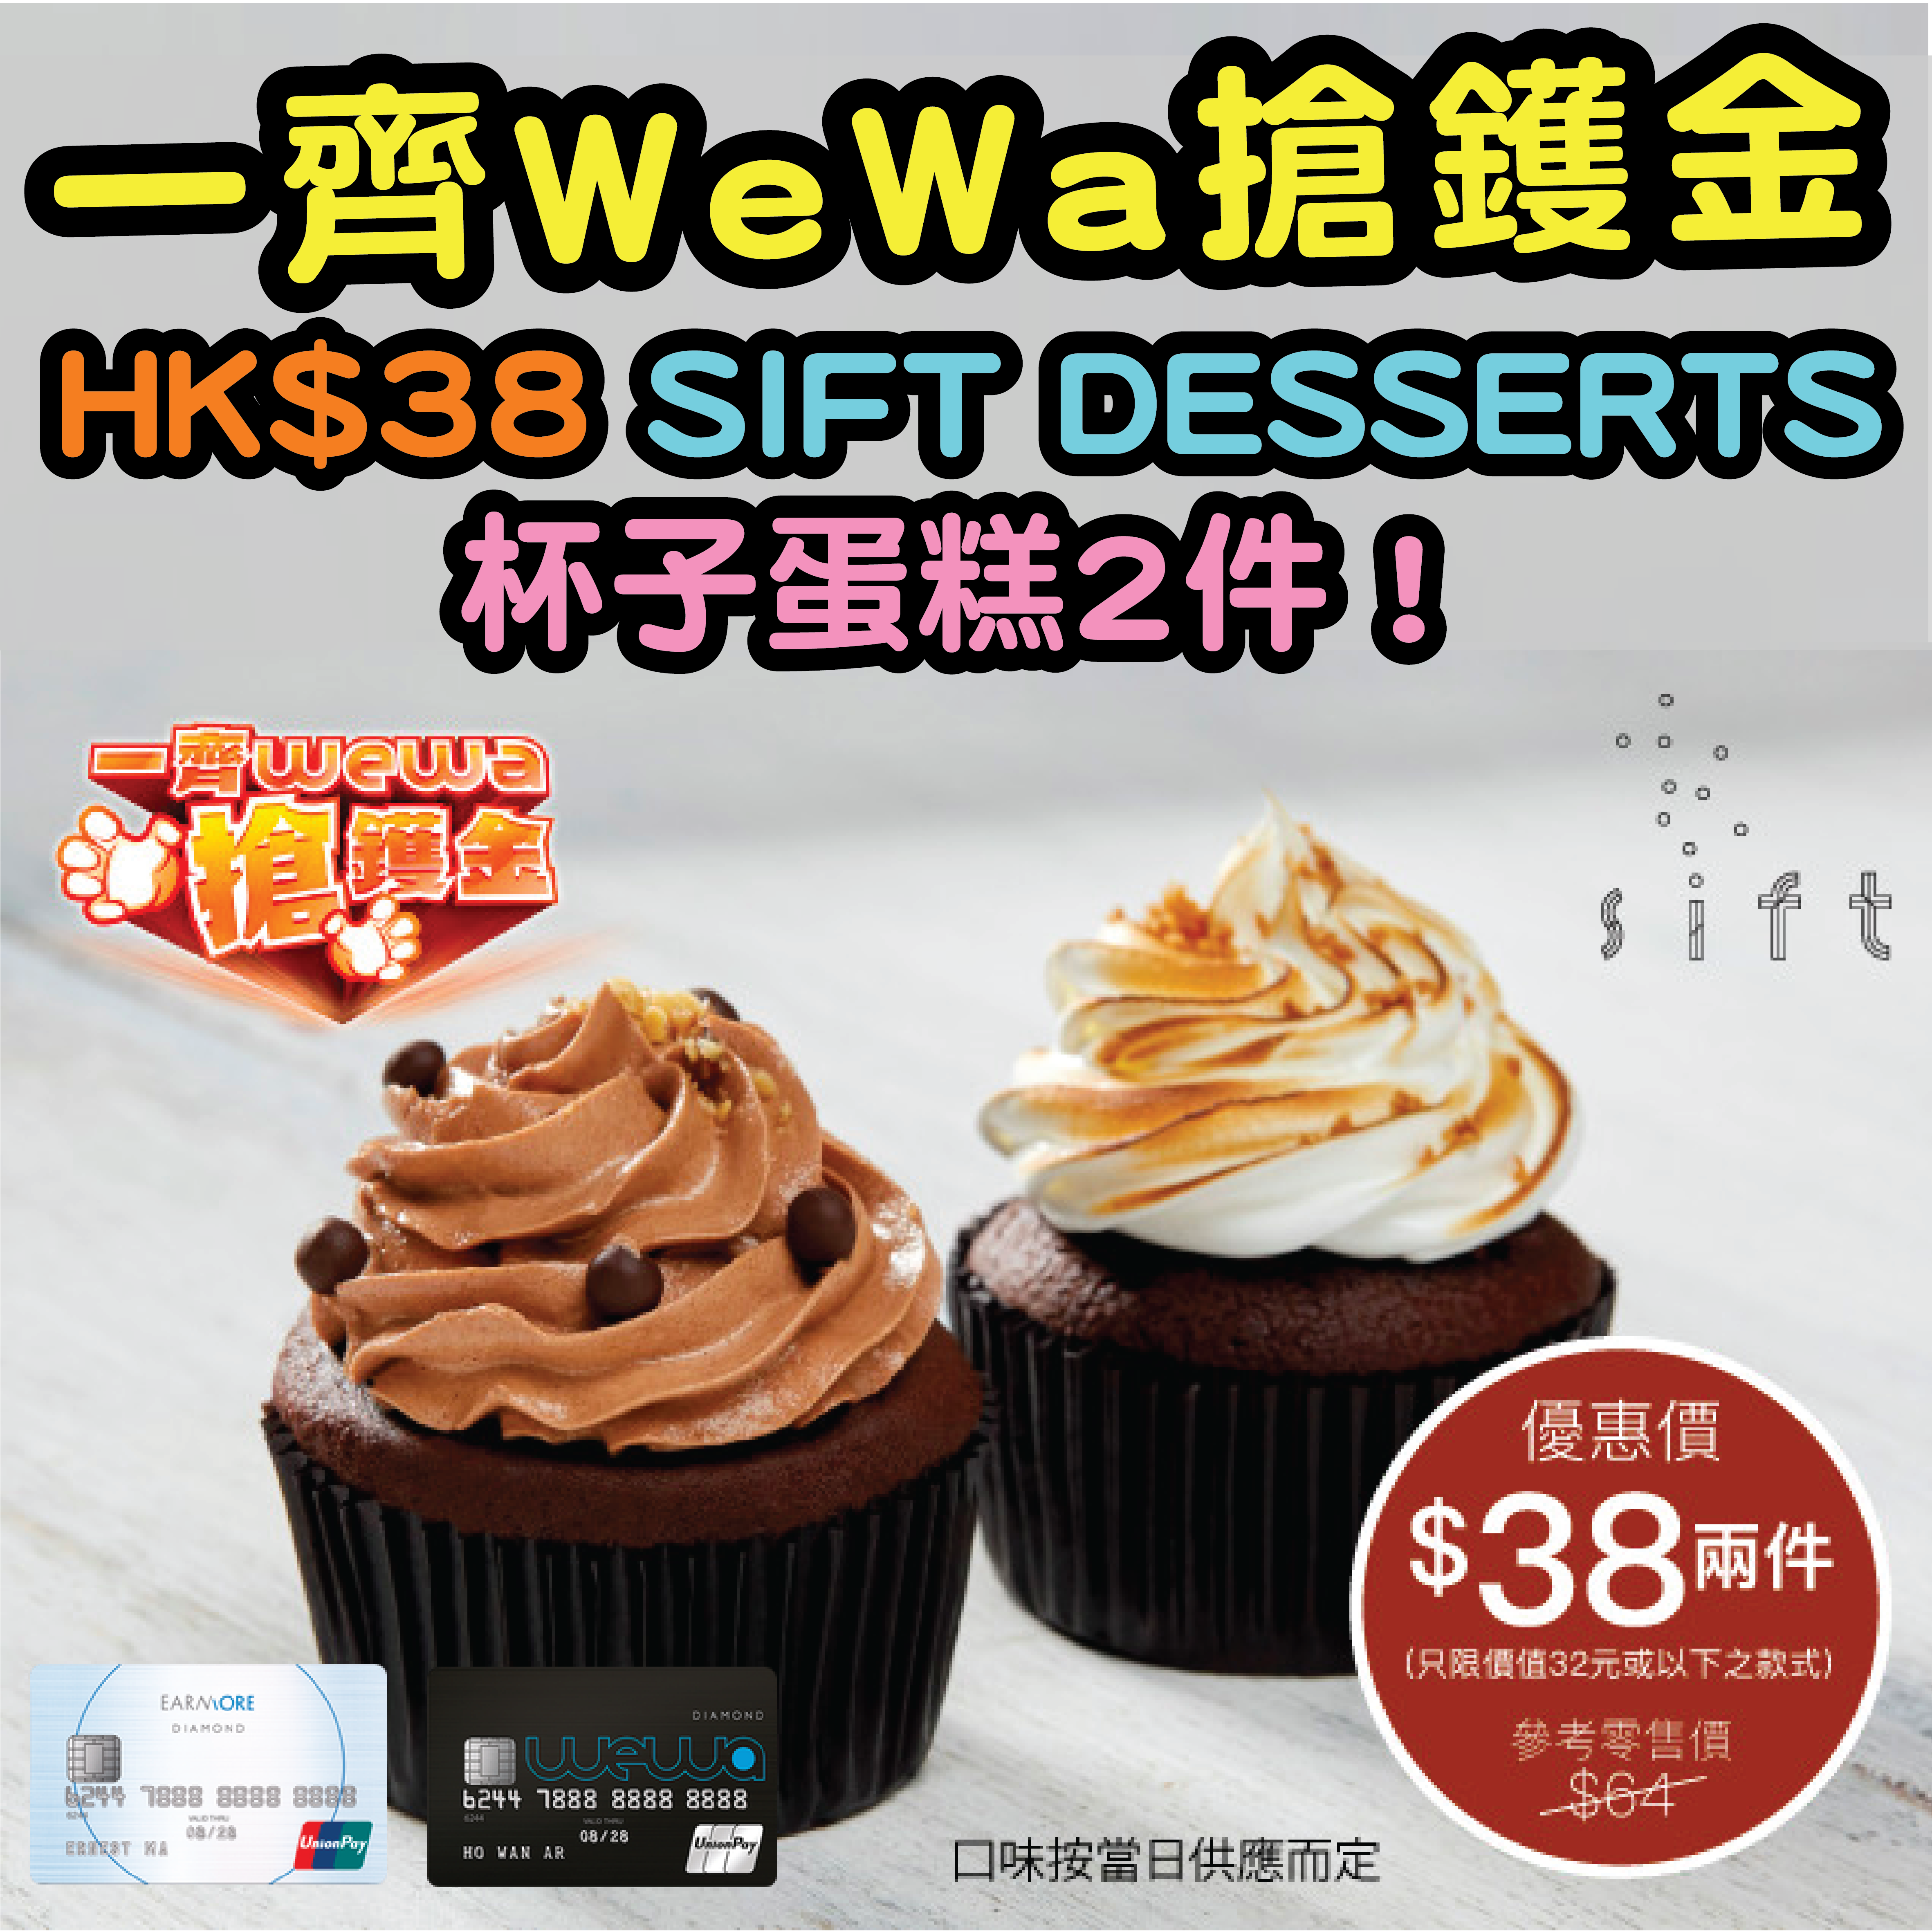 wewa sift desserts-03